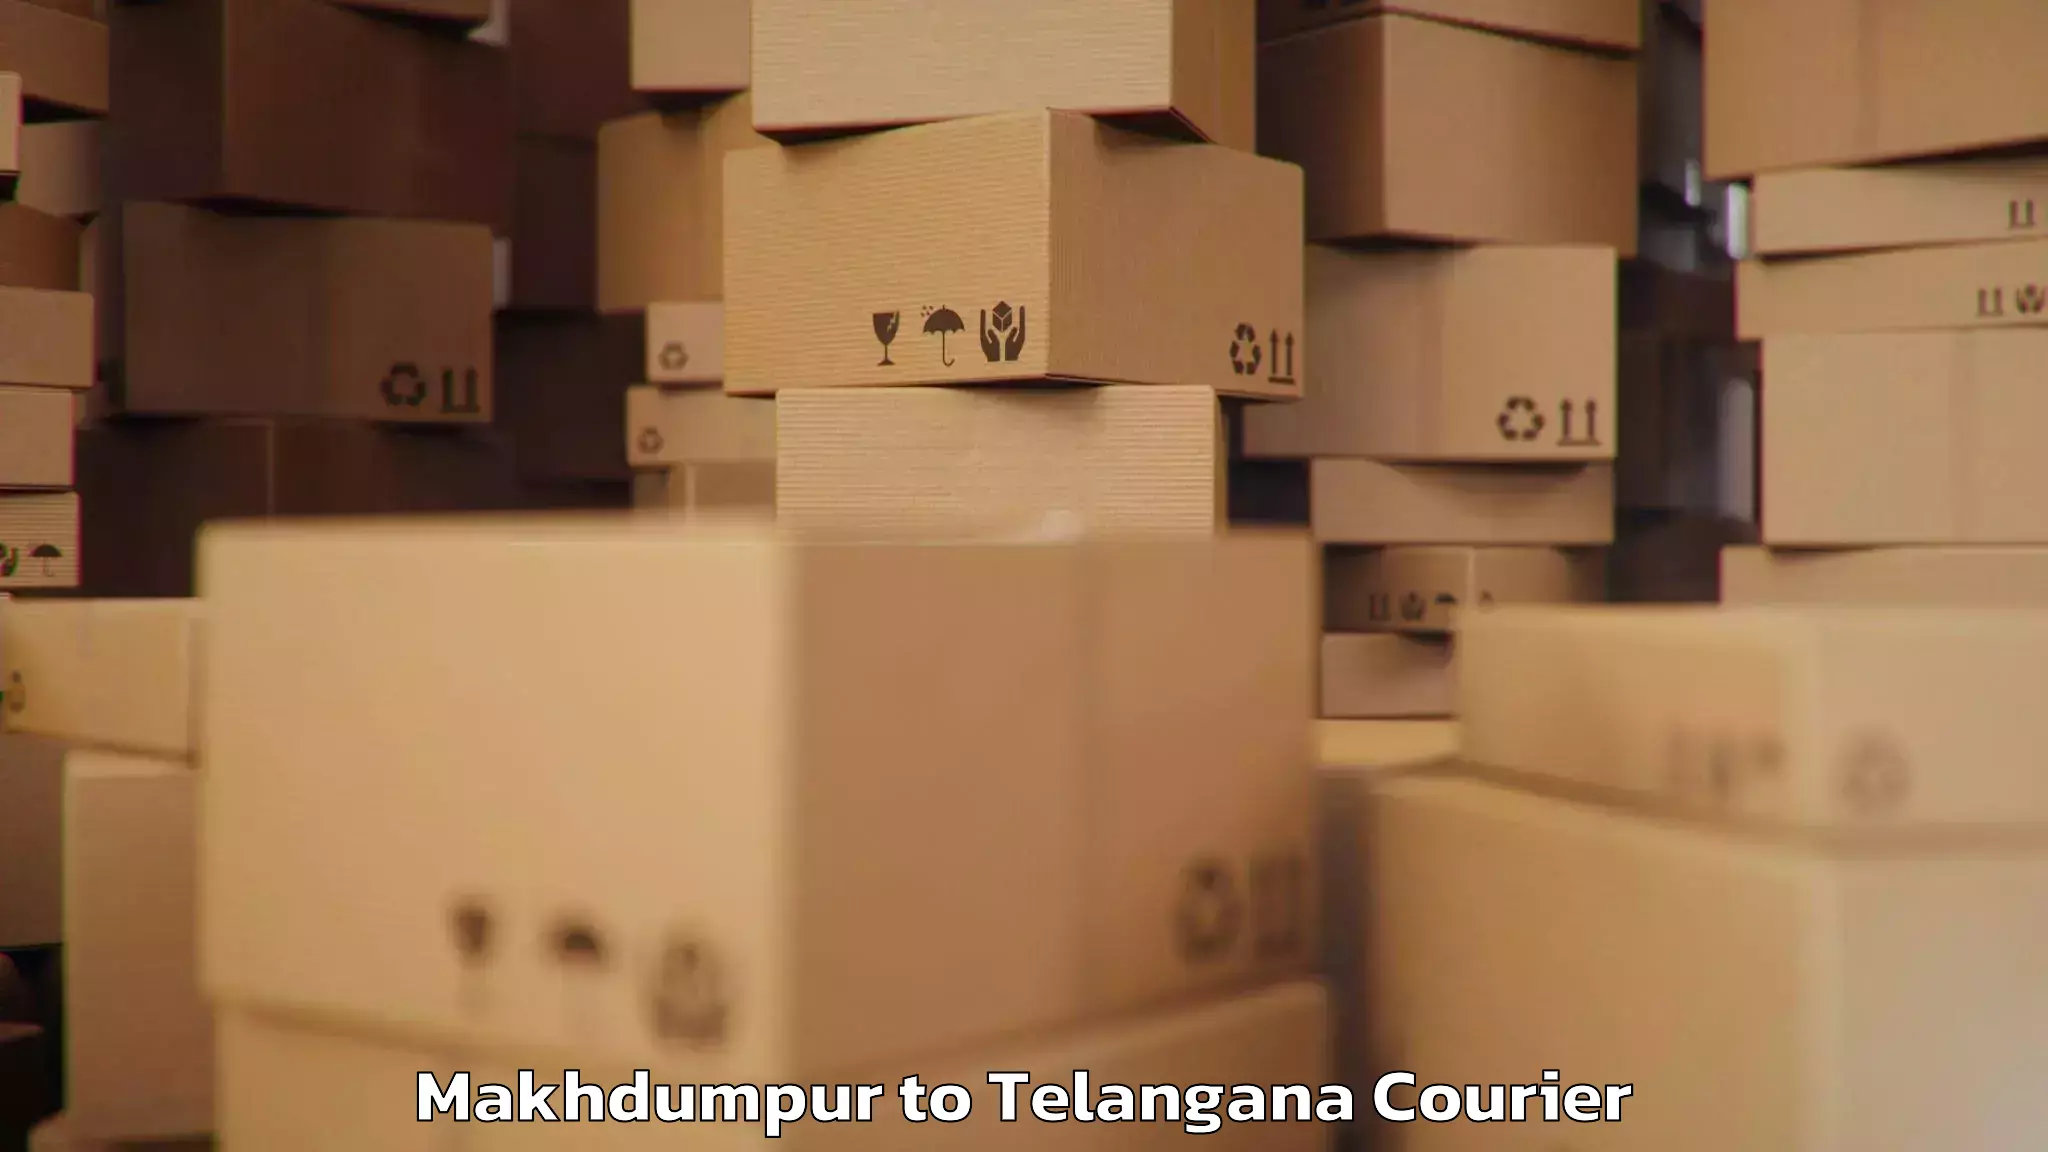 Luggage shipment tracking Makhdumpur to Kacheguda